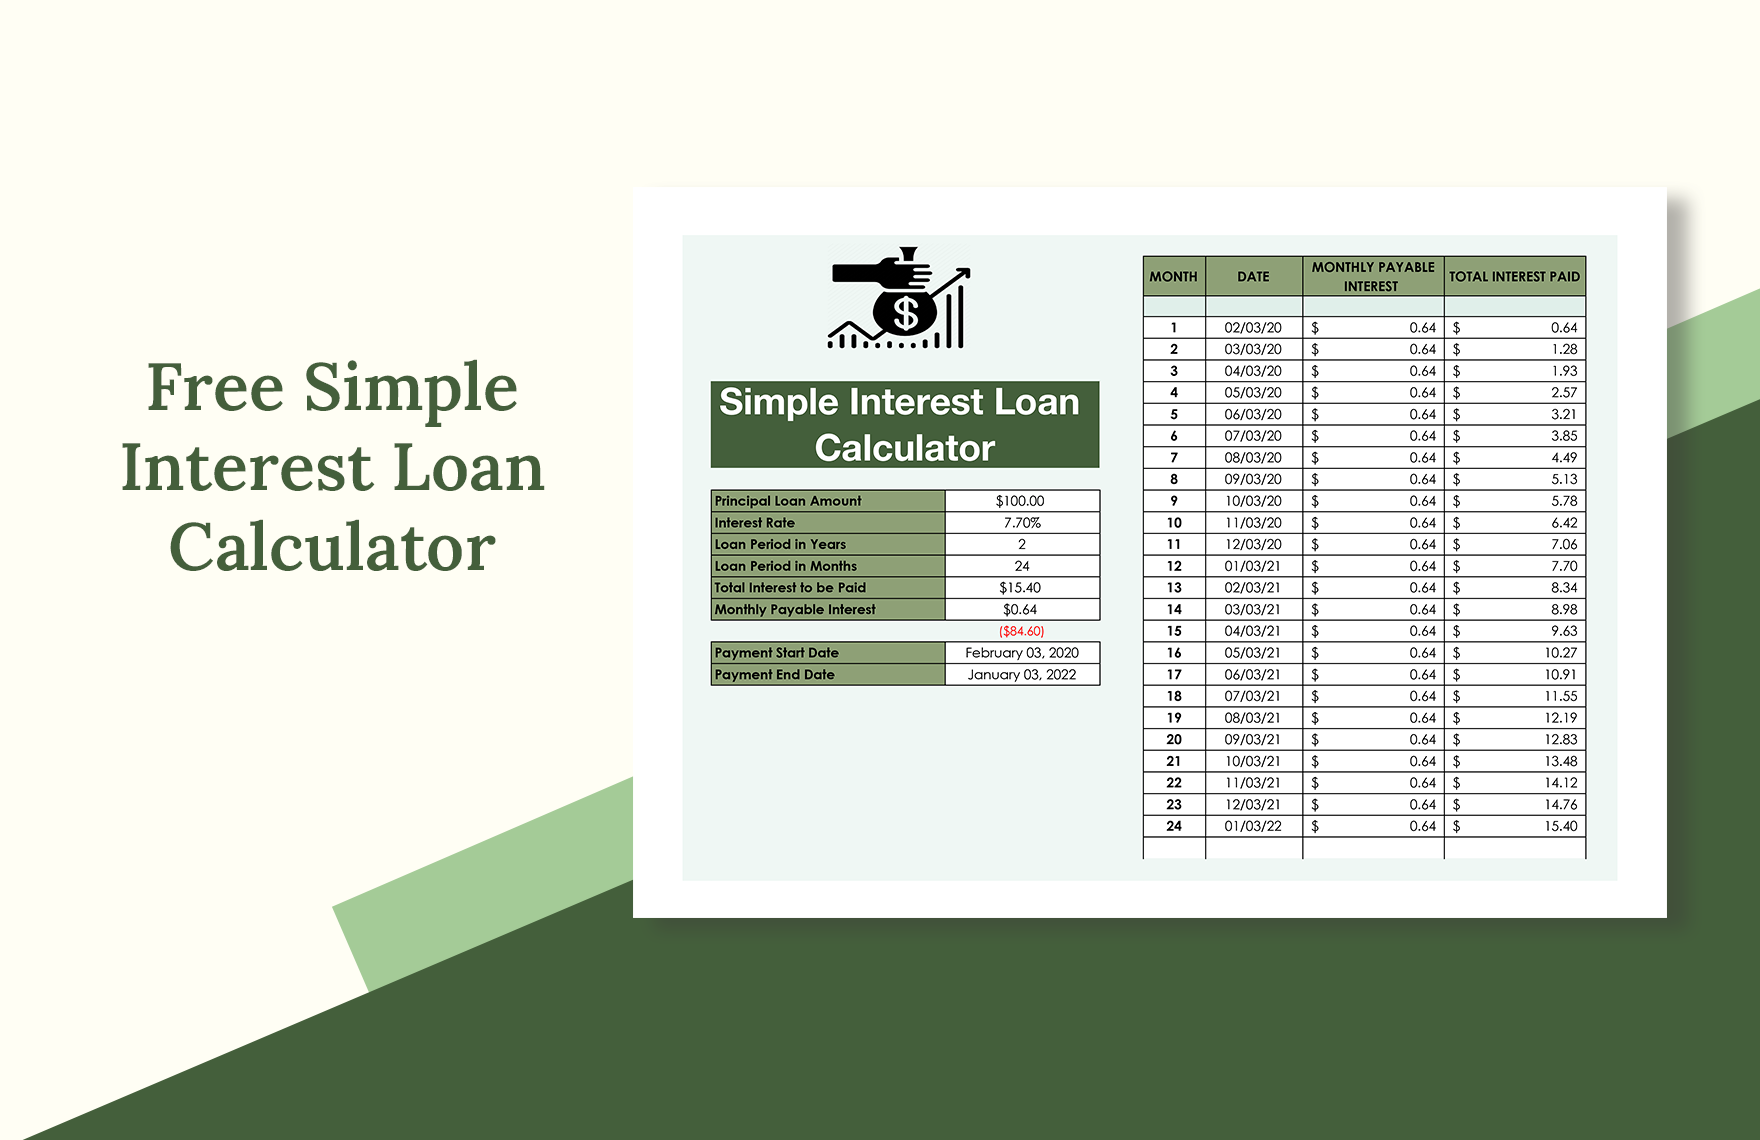 Simple Interest Loan Calculator